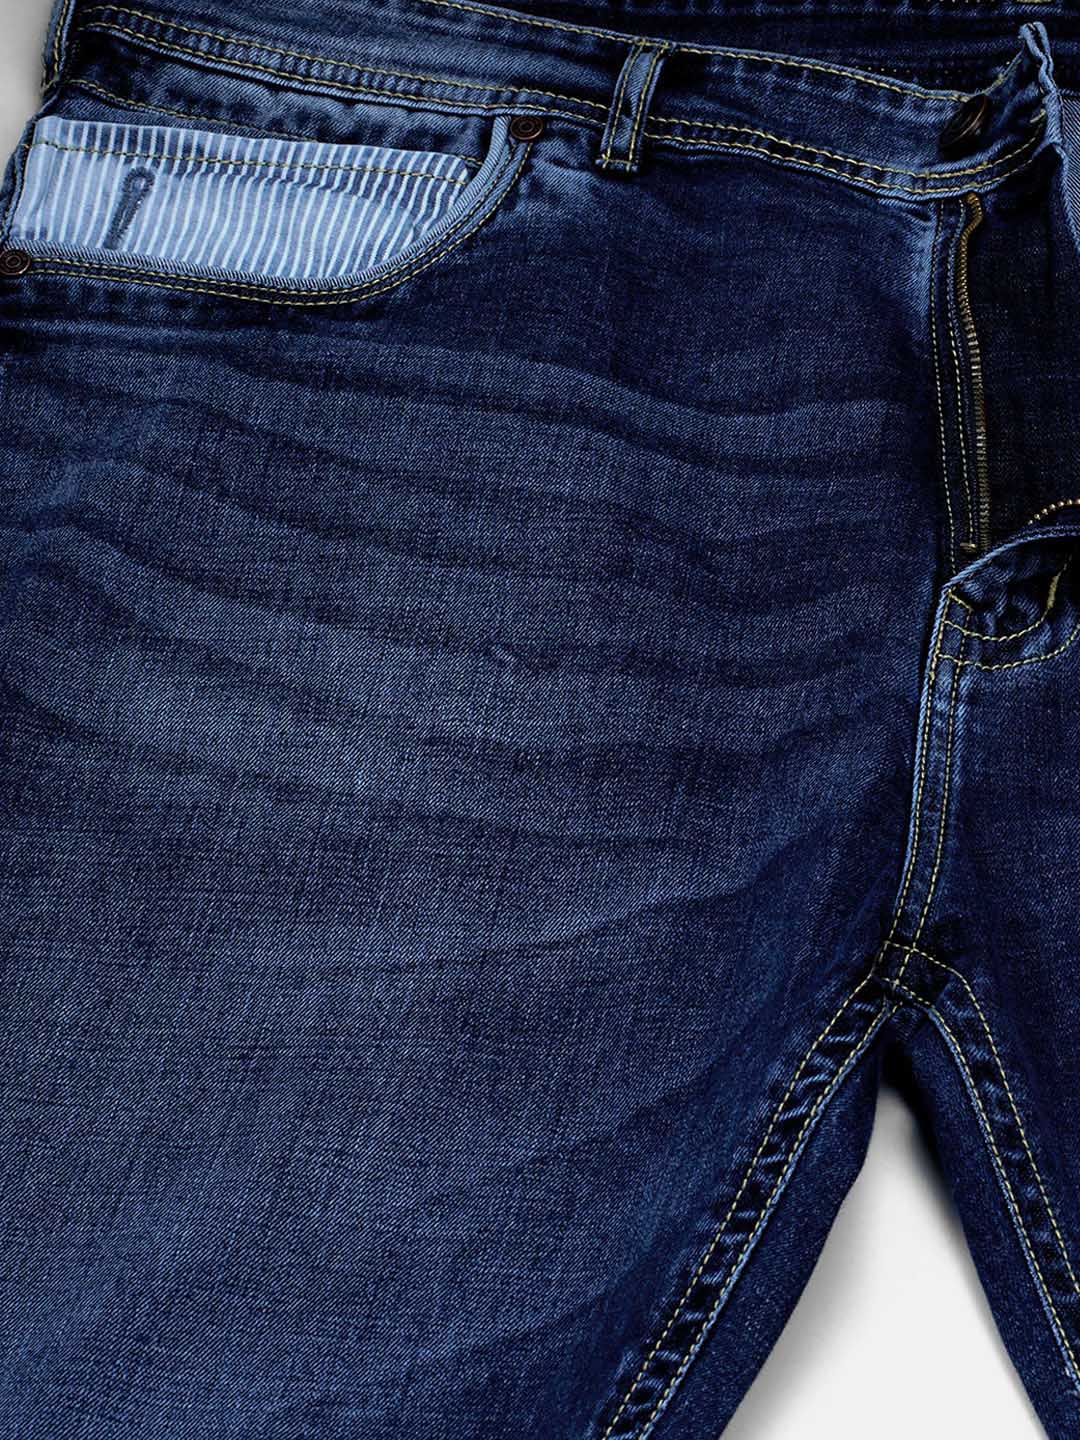 bottomwear/jeans/JPJ12126/jpj12126-2.jpg